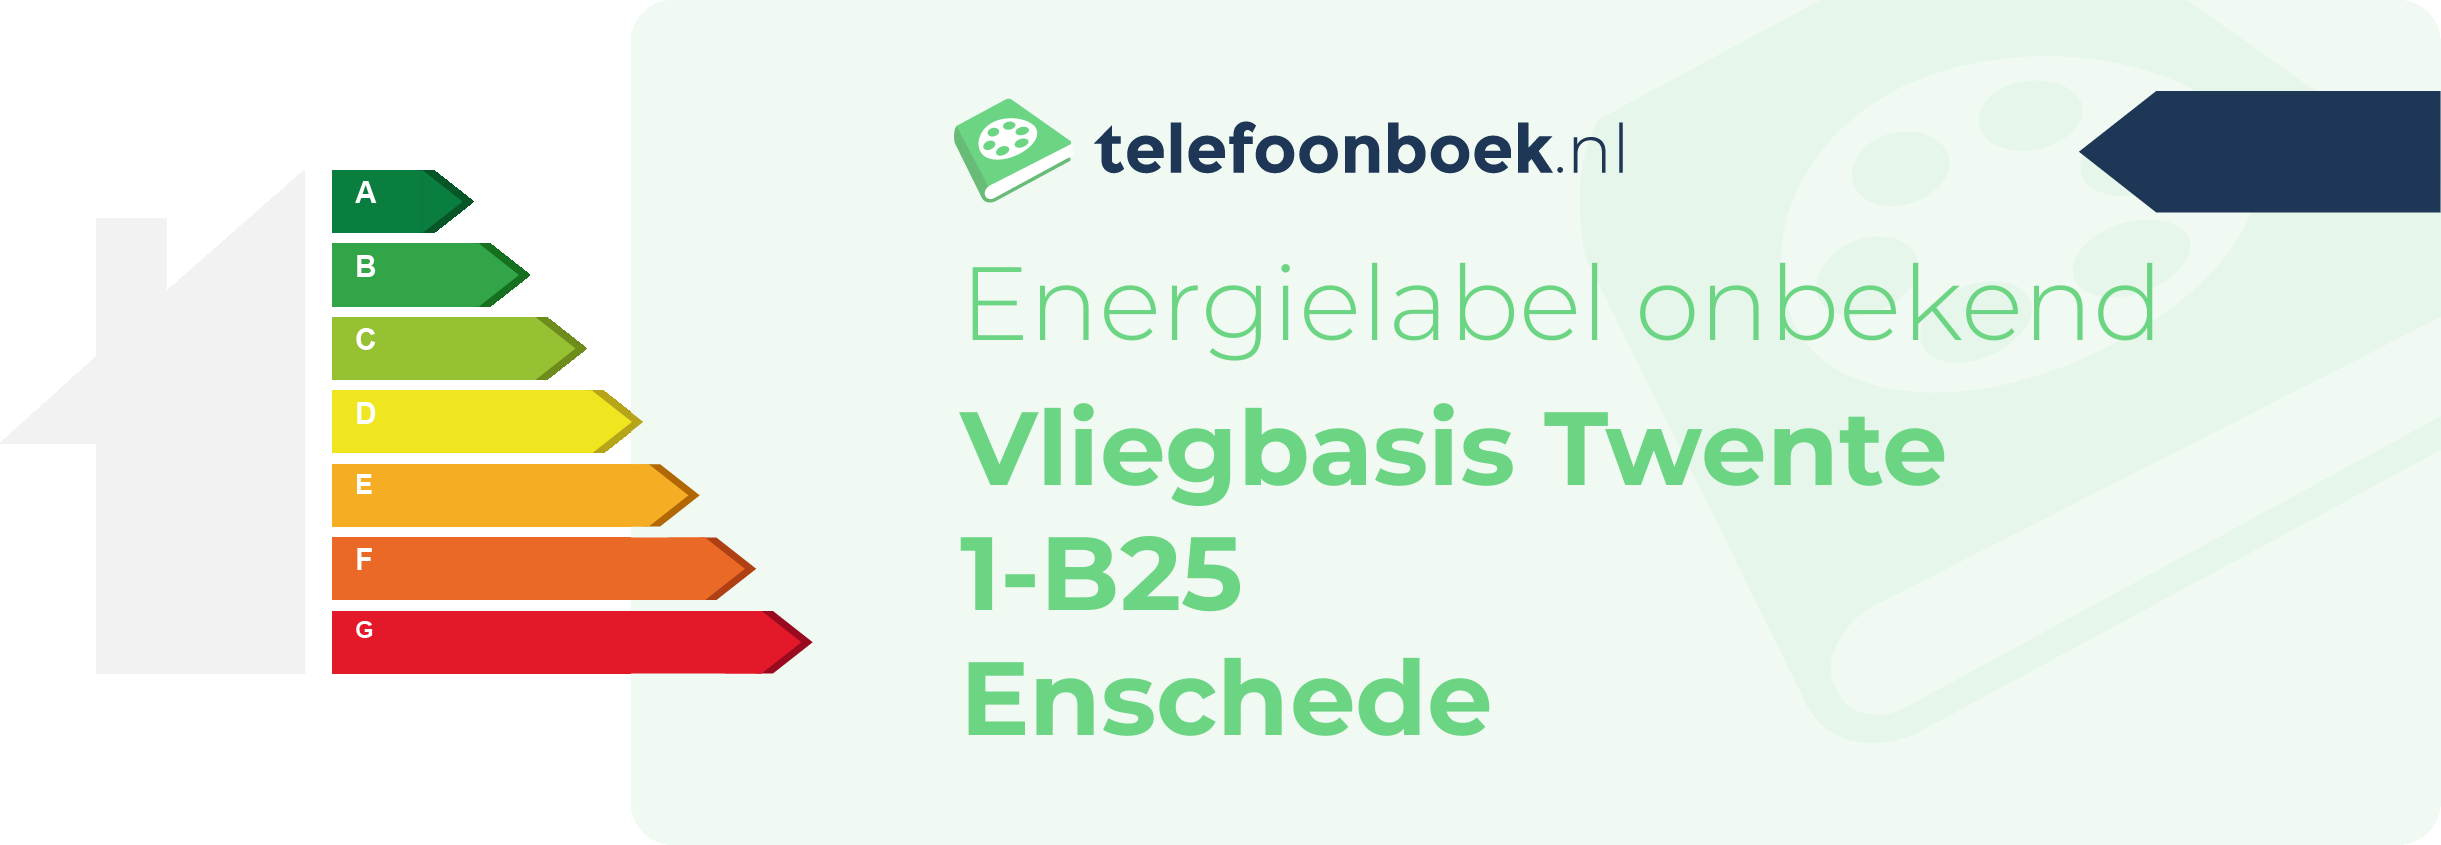 Energielabel Vliegbasis Twente 1-B25 Enschede